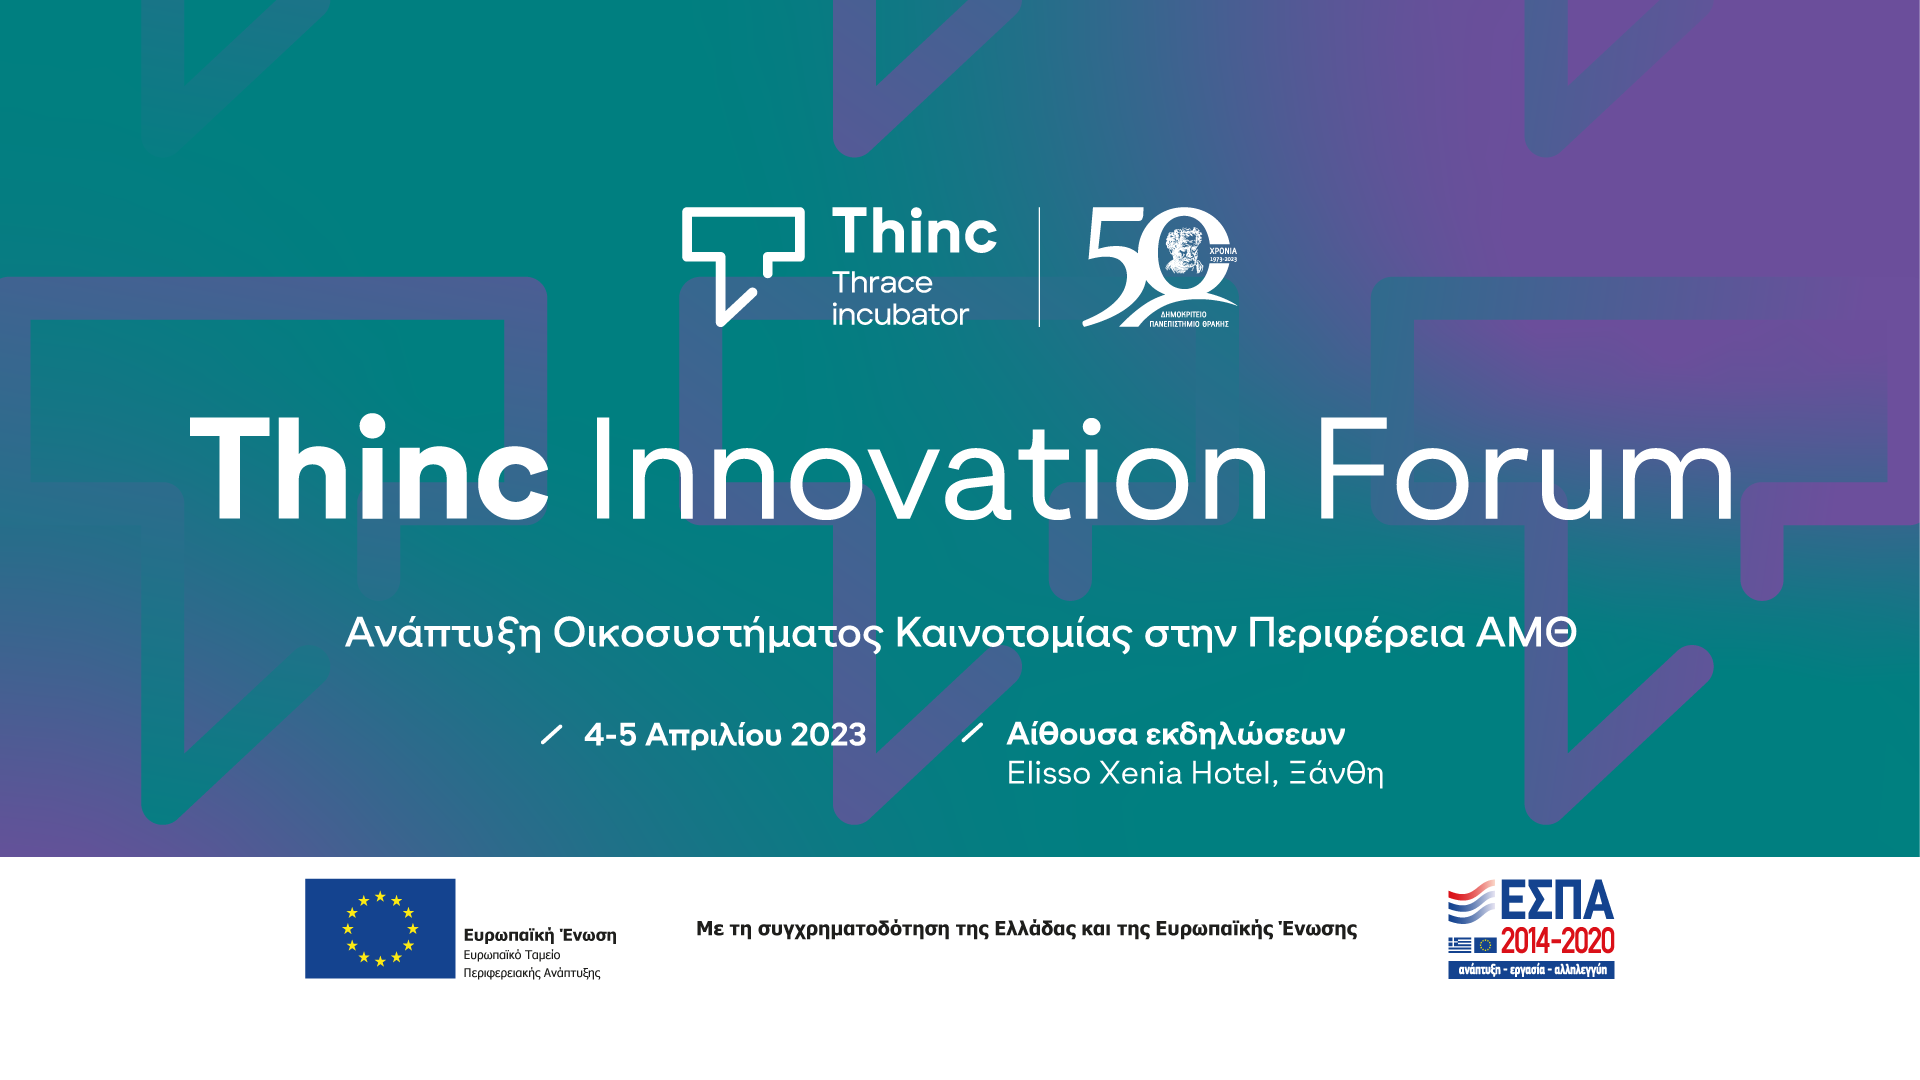 Διοργάνωση Συνεδρίου «ΤHINC INNOVATION FORUM – Ανάπτυξη οικοσυστήματος καινοτομίας στην Περιφέρεια Ανατολικής Μακεδονίας και Θράκης»